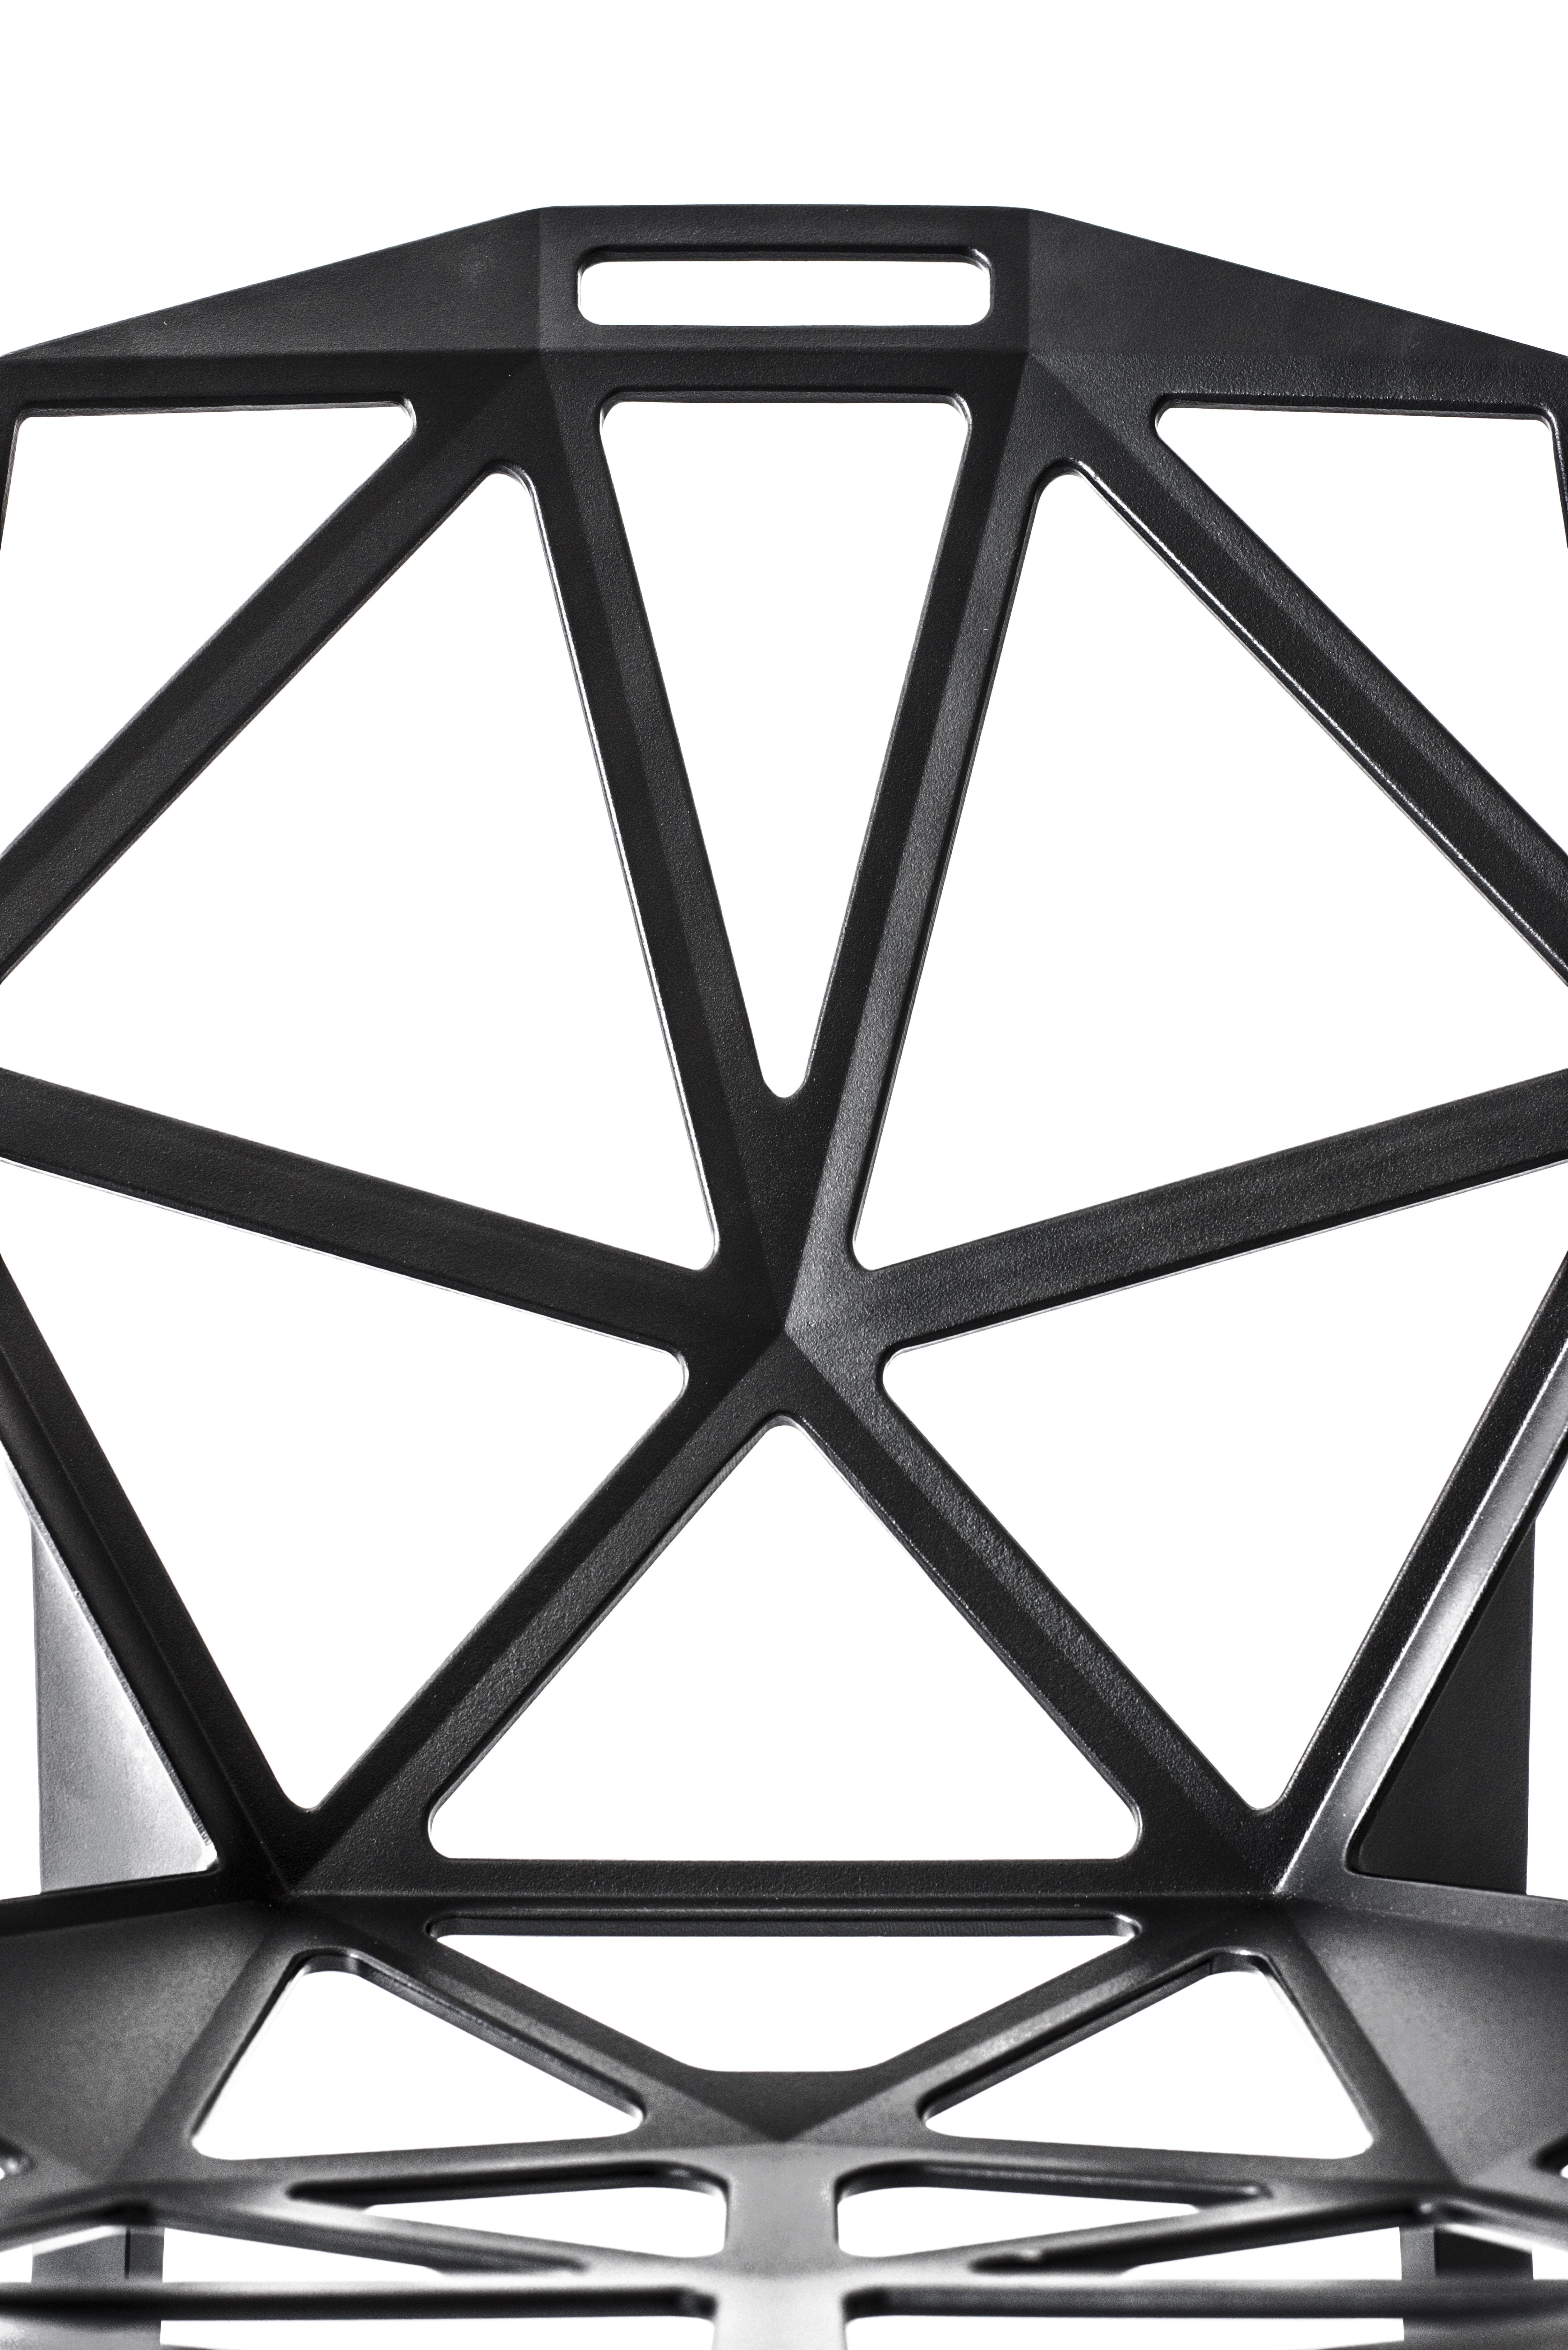 Une coque en aluminium moulé sous pression composée de nombreuses petites faces perforées et triangulaires. Chair_One est en quelque sorte construit comme un ballon de football, c'est-à-dire avec une série d'éléments plats reliés entre eux par des